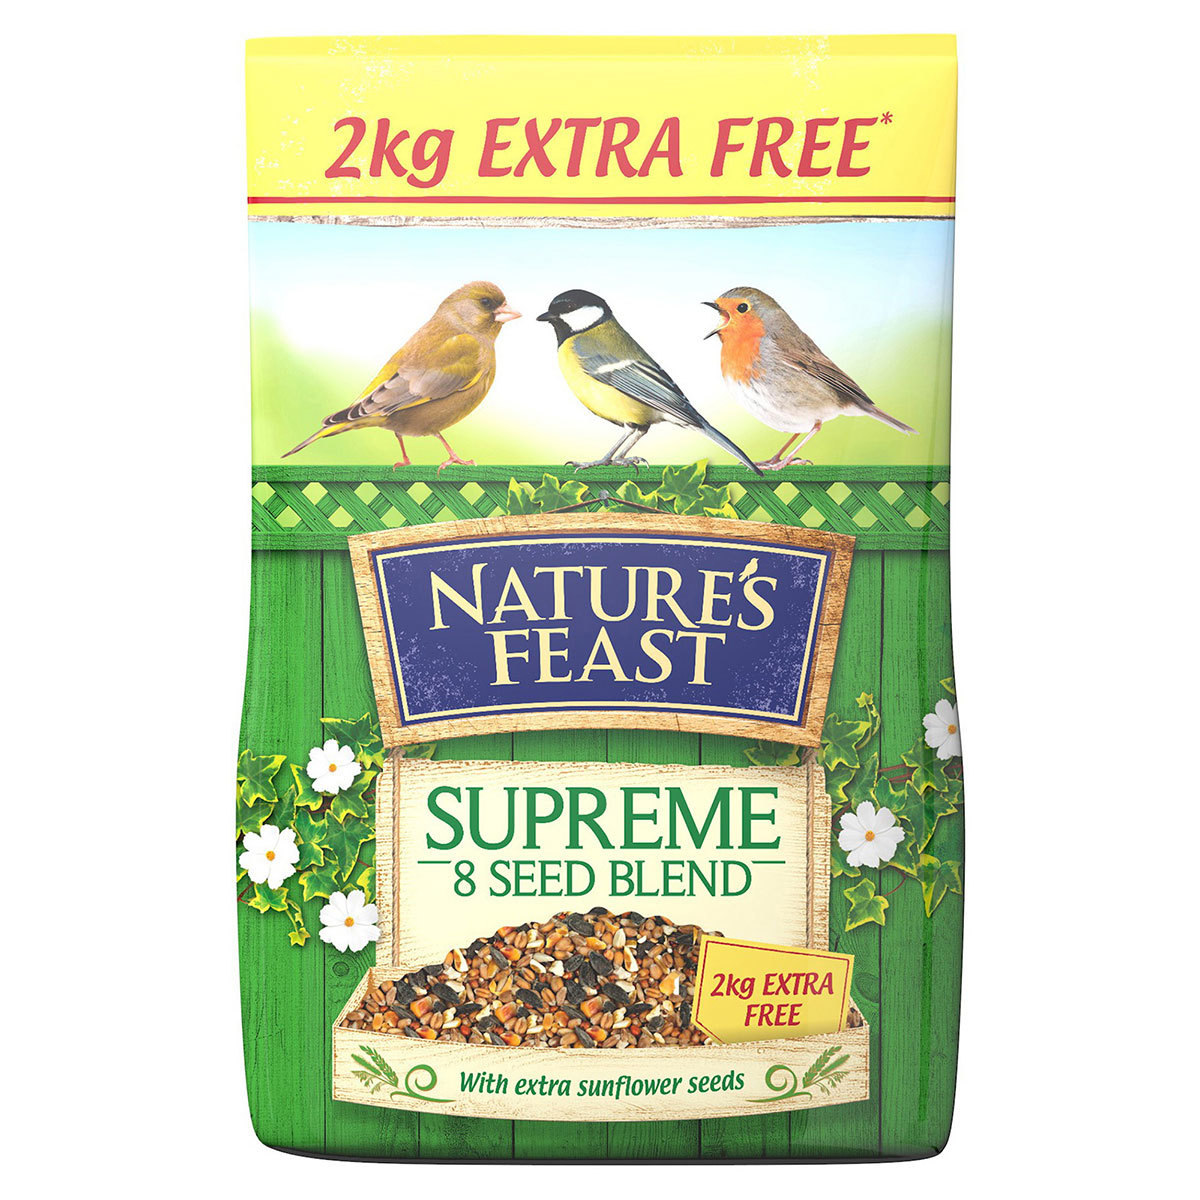 Nature's Feast Supreme 8 Seed Blend, 12.75kg + 2kg